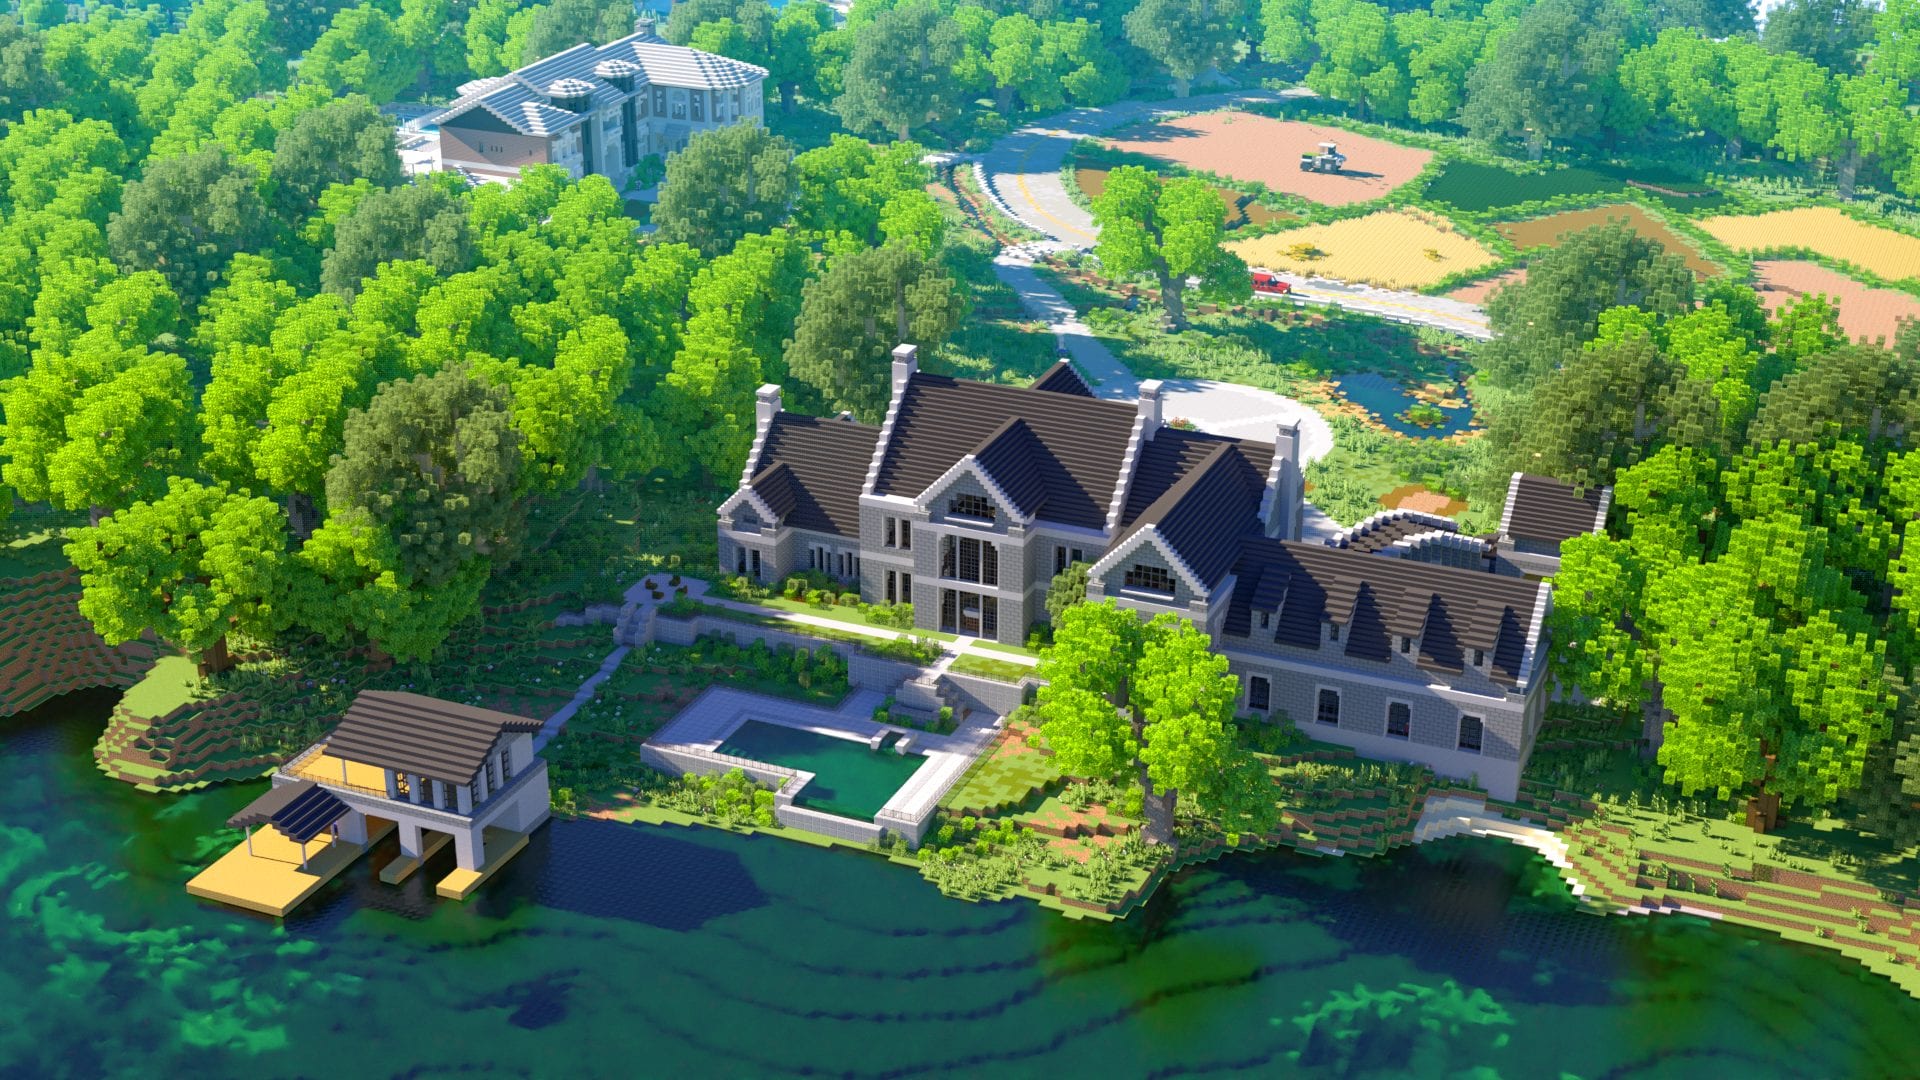 $1,000,000 Mansions Minecraft Aurrora